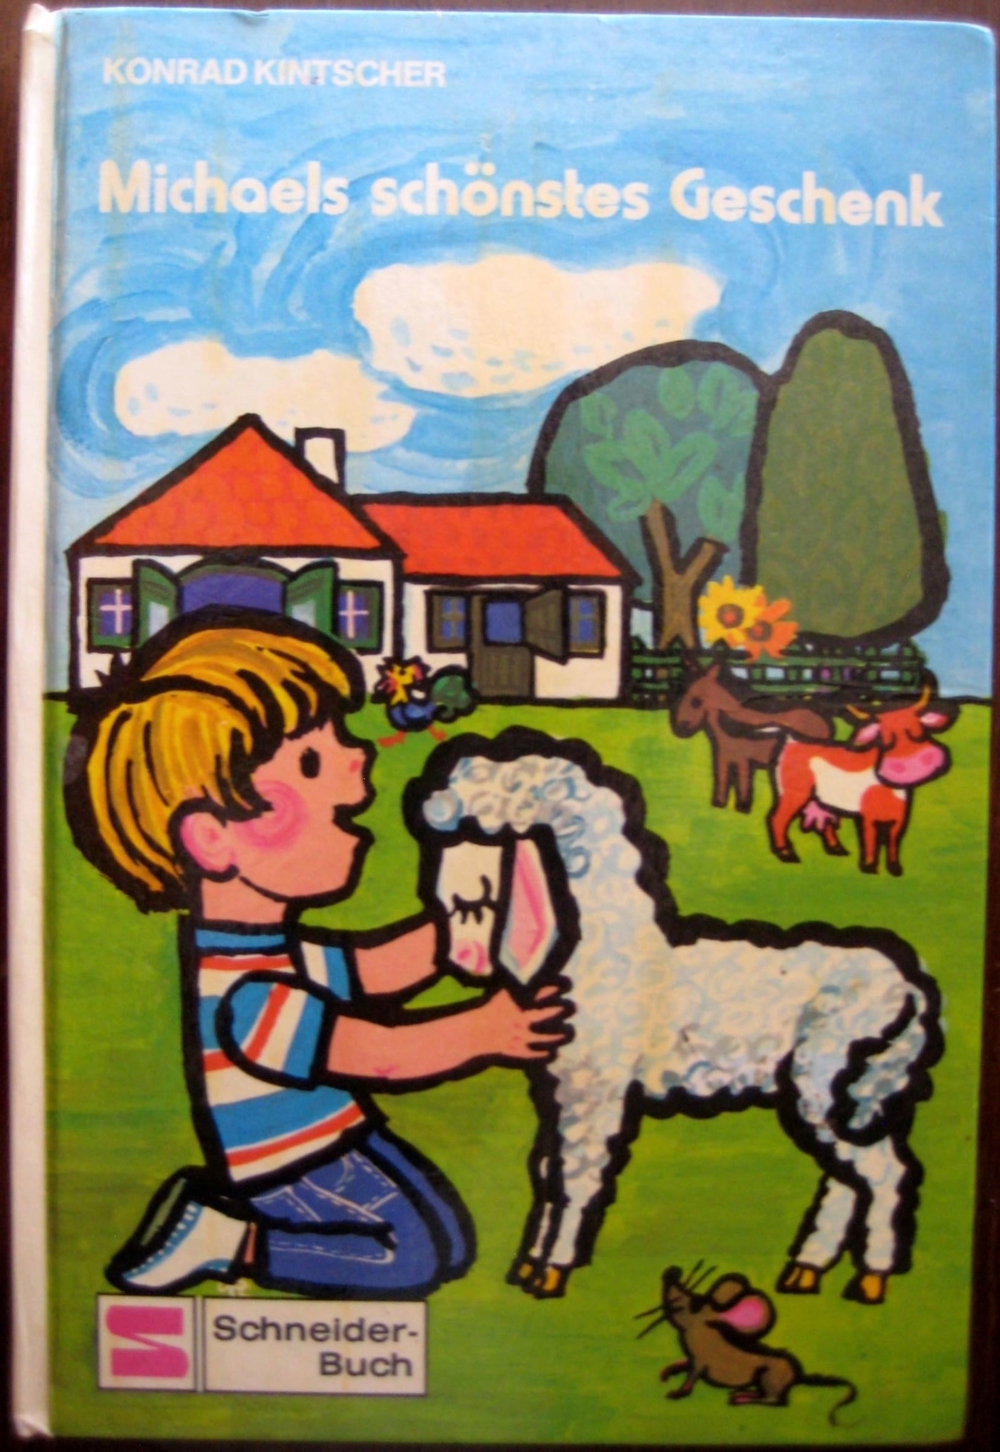 Schönes Kinderbuch Michaels schönstes Geschenk von Konrad Kinschter für Kinder zwischen 6 und 8